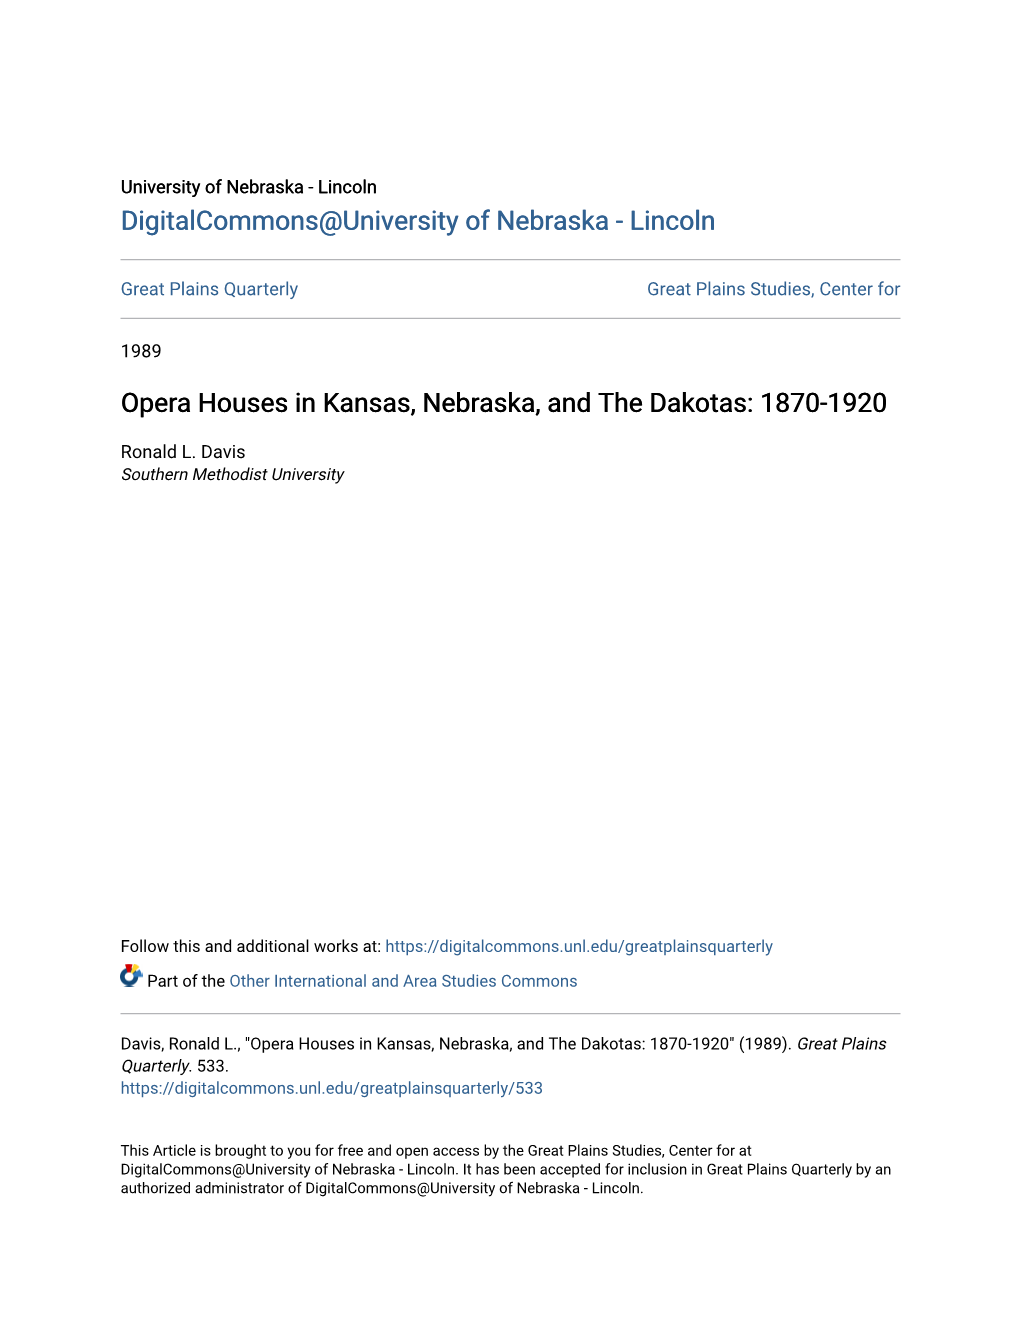 Opera Houses in Kansas, Nebraska, and the Dakotas: 1870-1920